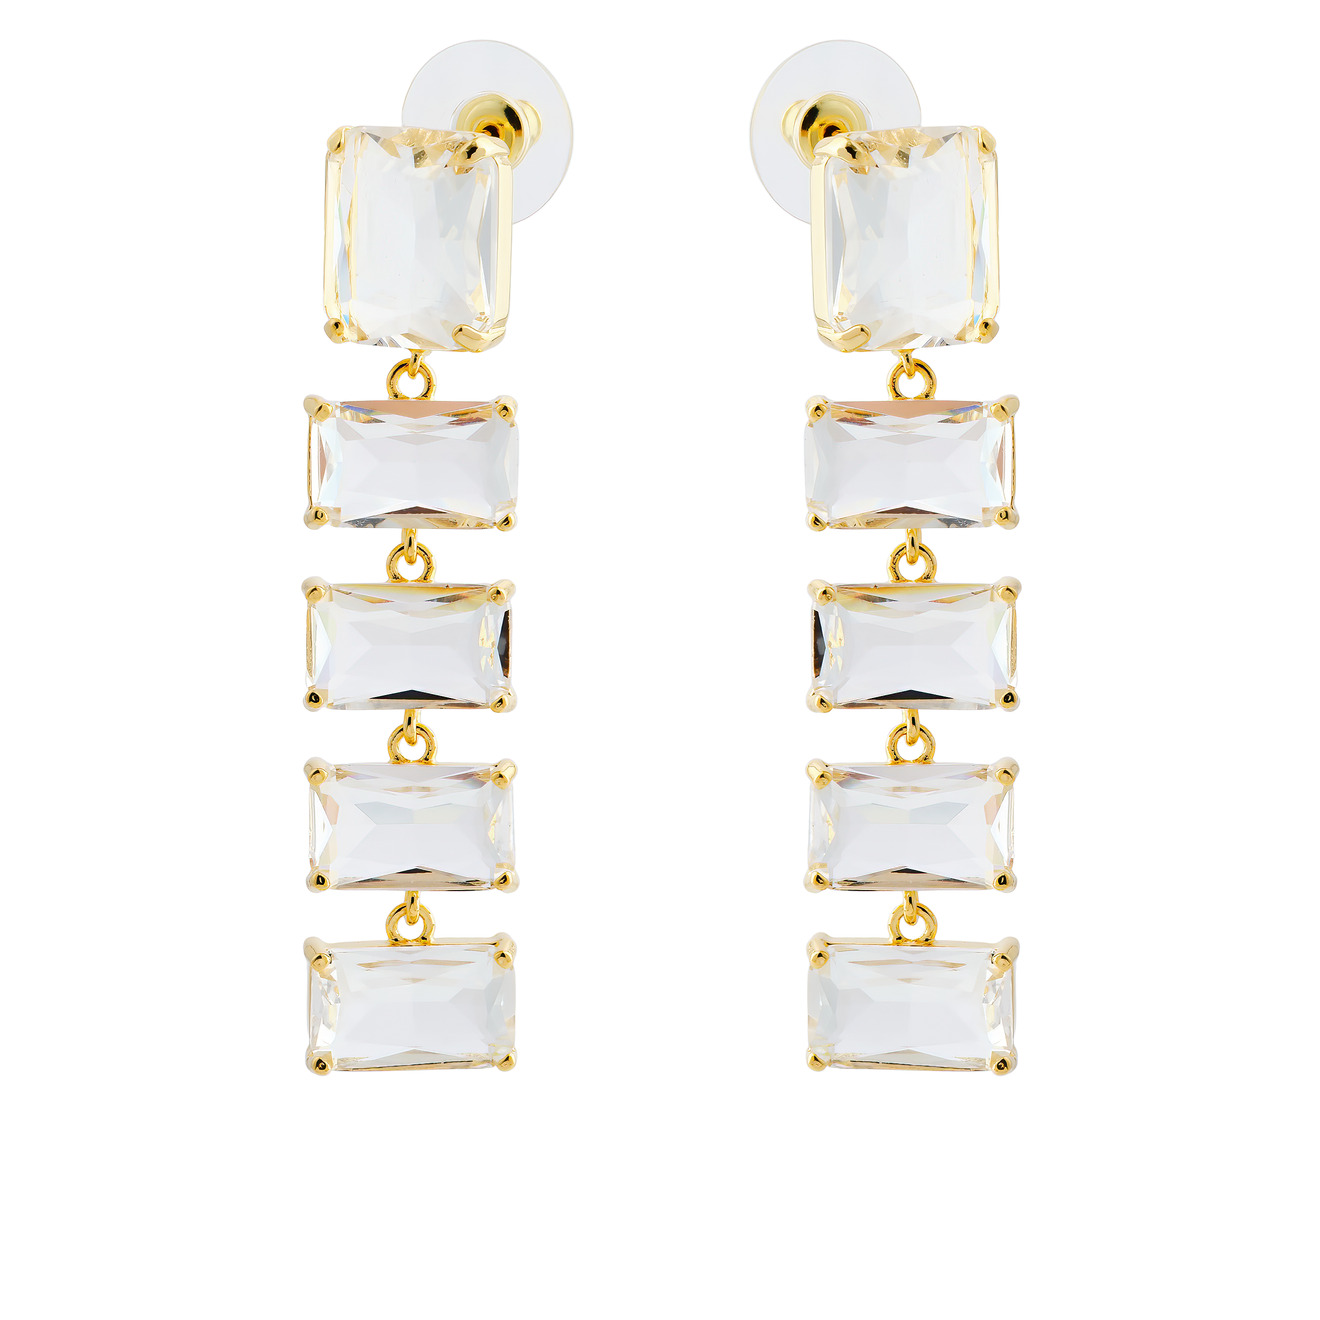 Herald Percy Золотистые длинные серьги с крупными кристаллами herald percy золотистые изогнутые серьги с кристаллами